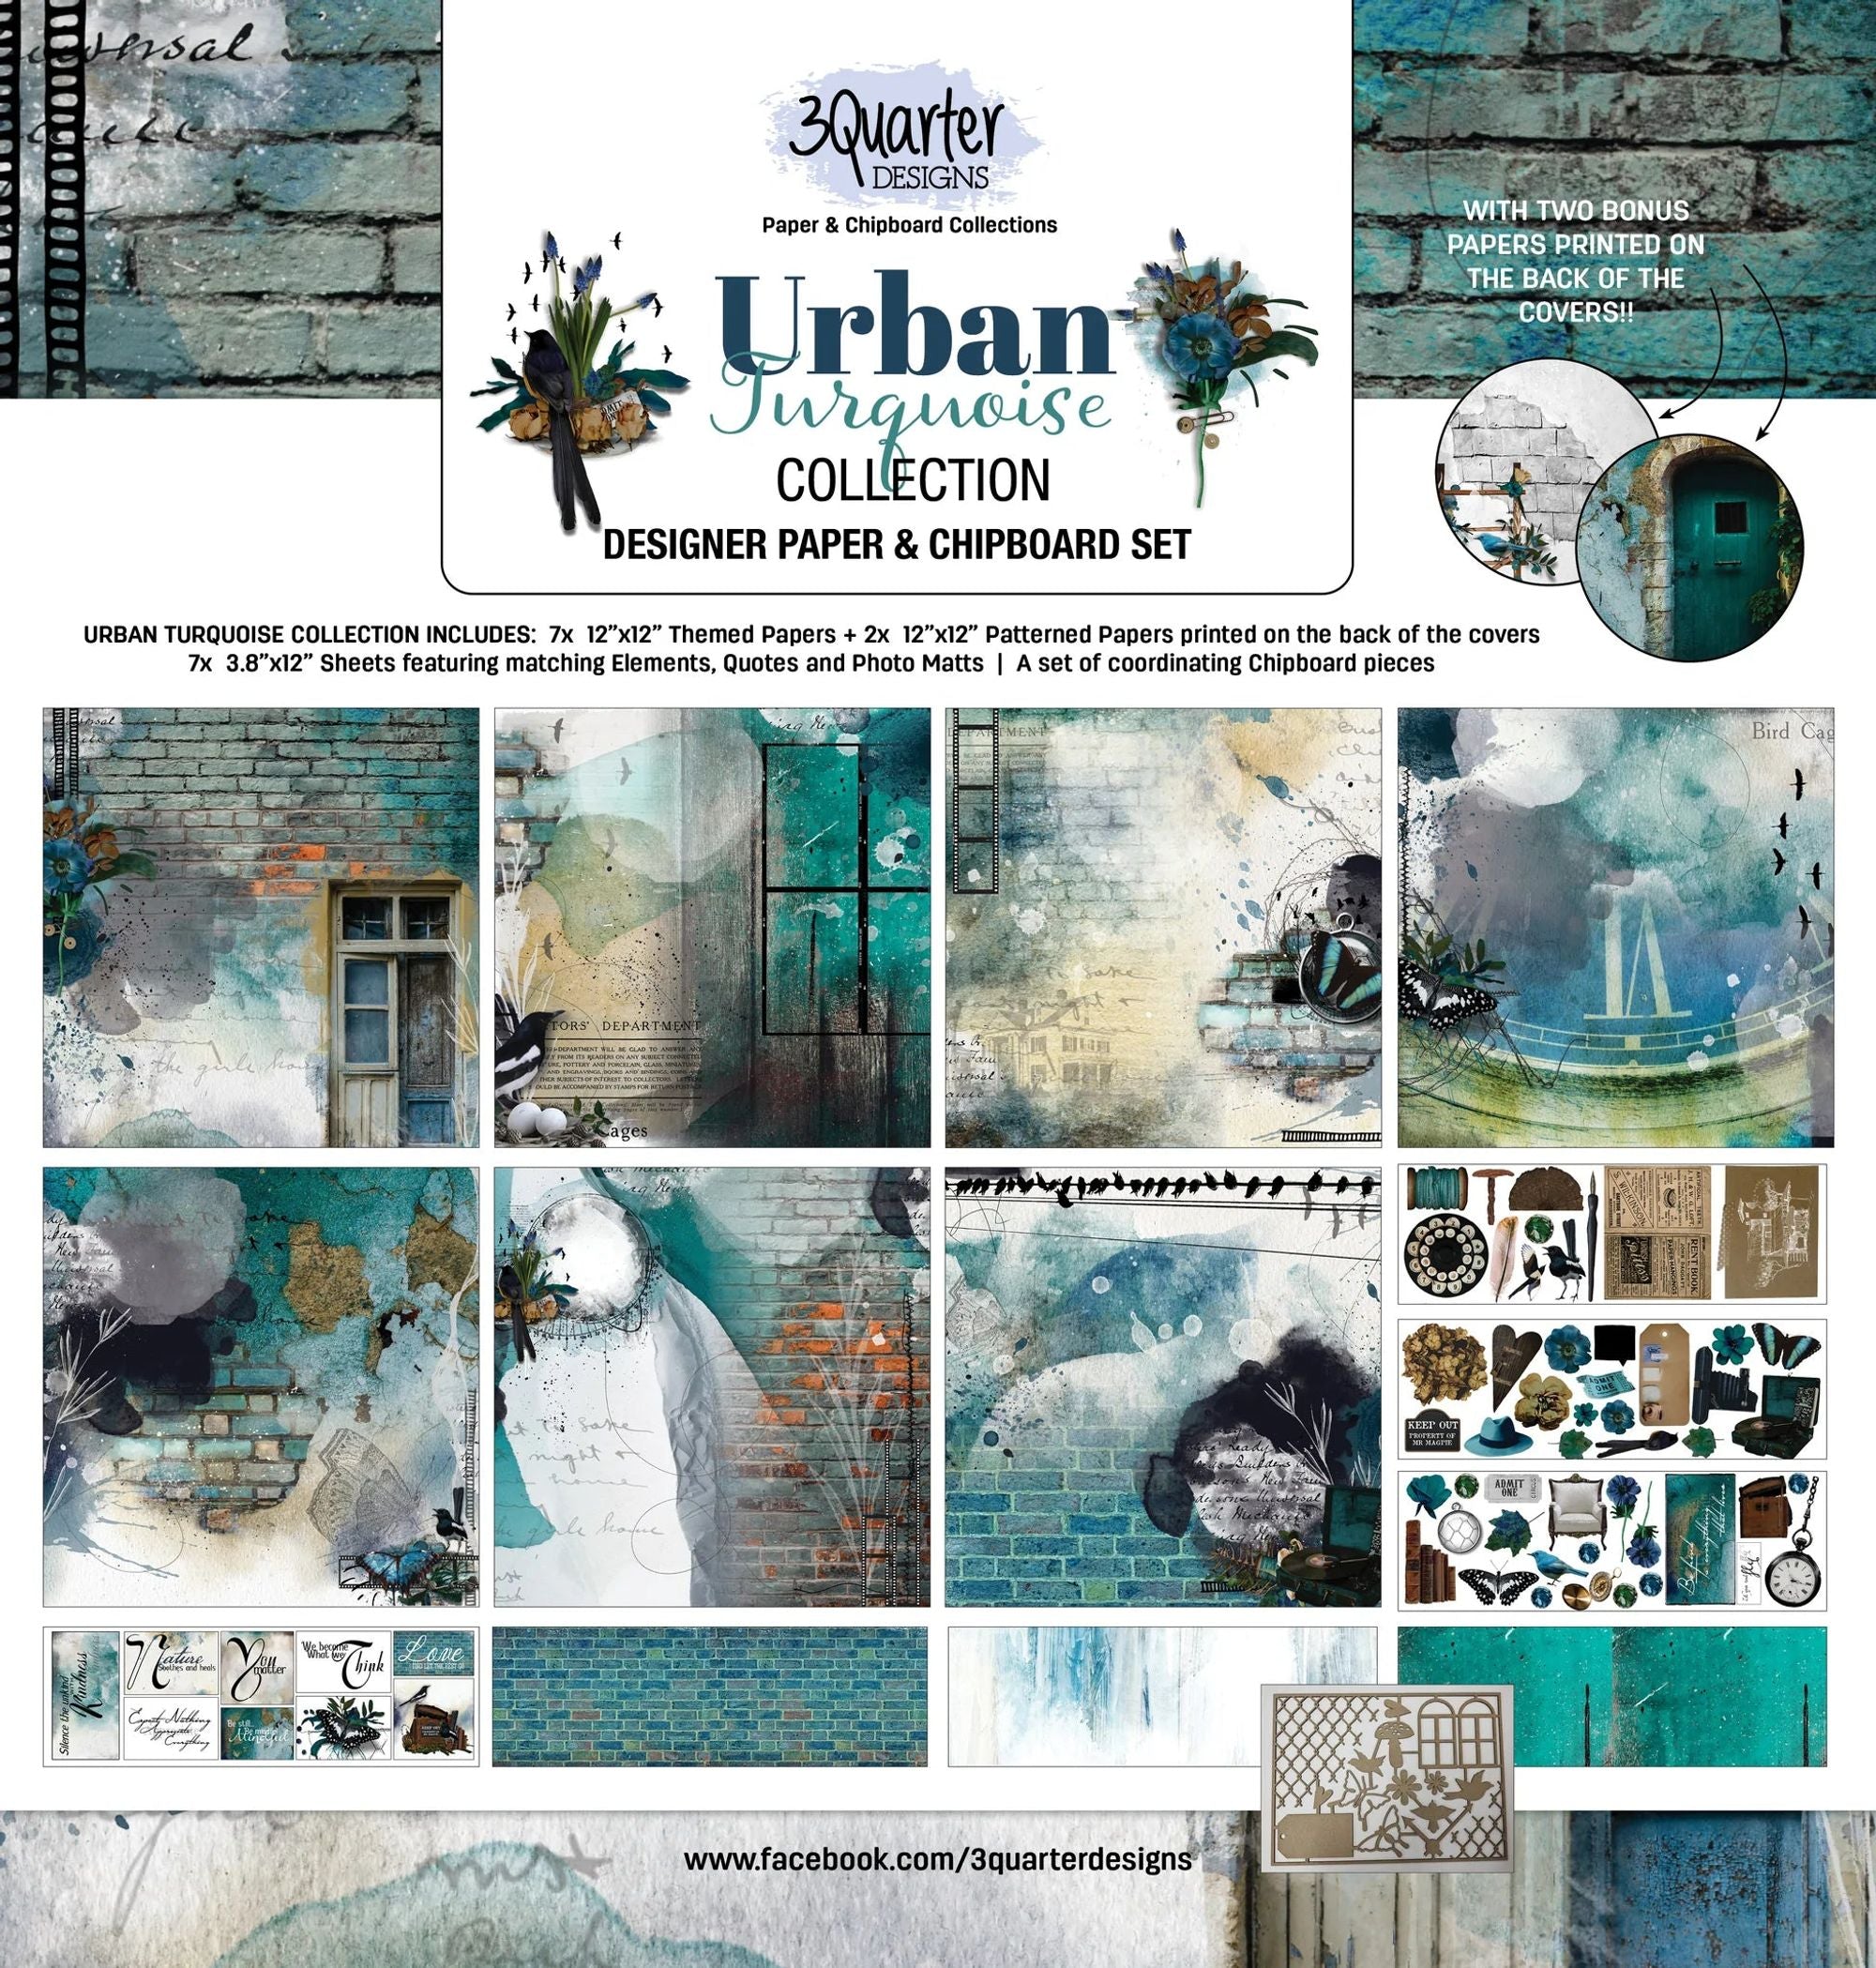 3Quarter Designs - Scrapbook Collection - Urban Turquoise